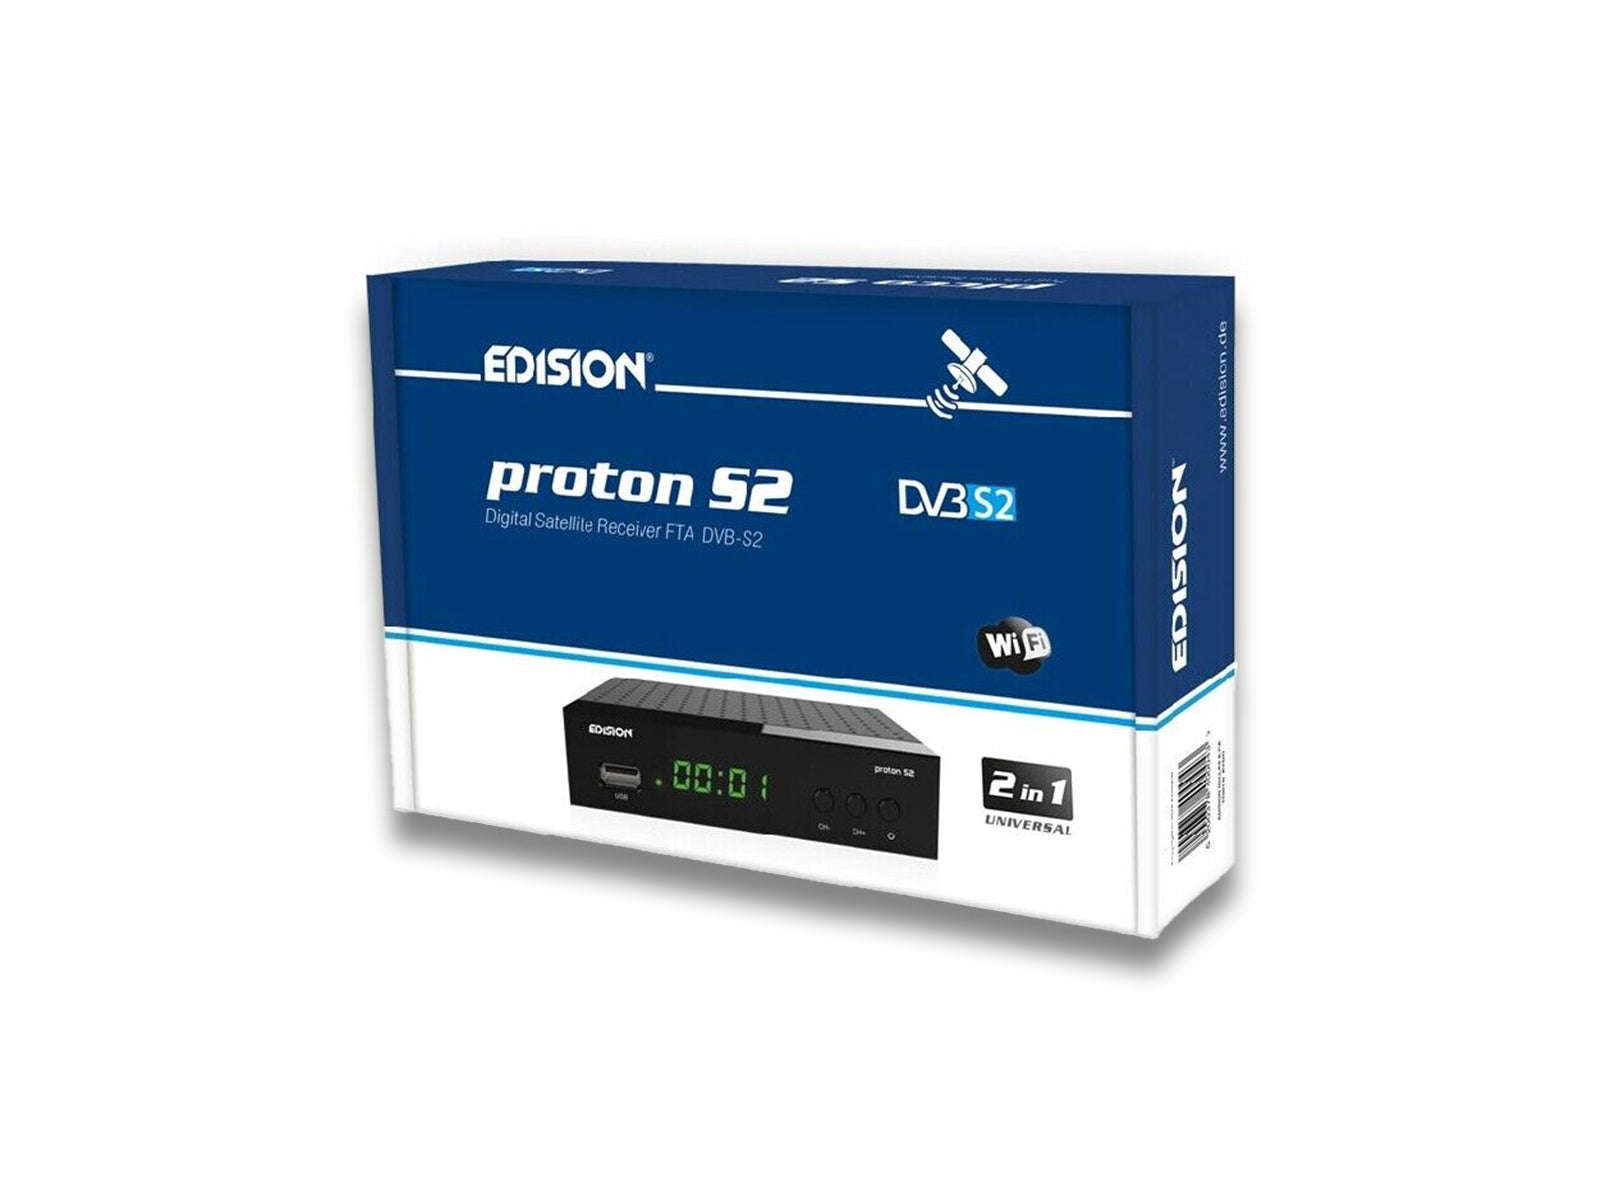 Edision Proton S2 Box Side